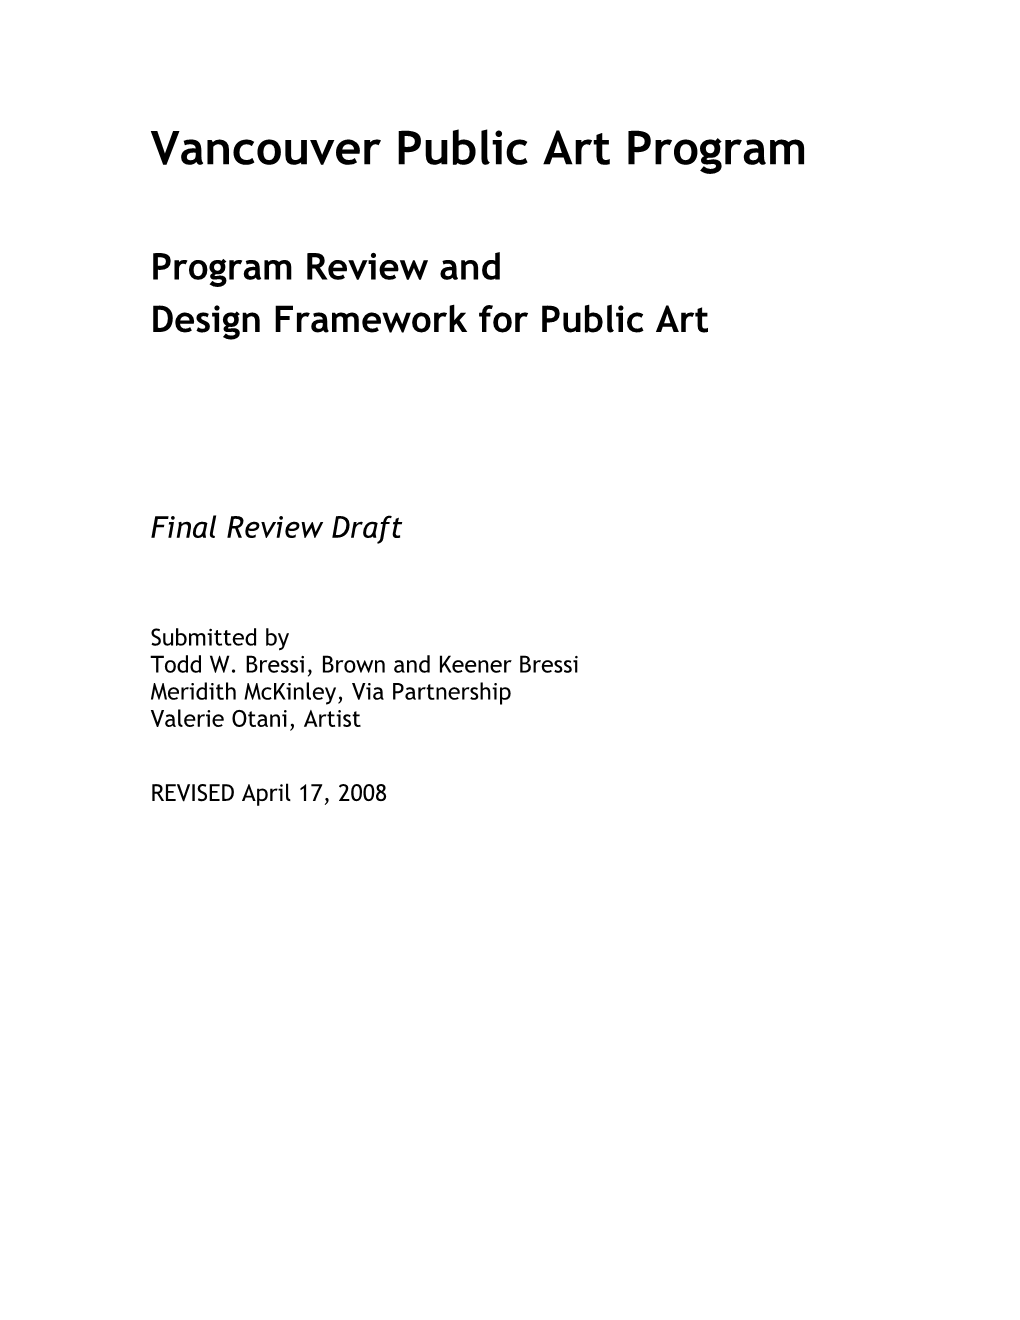 Public Art Review Plan